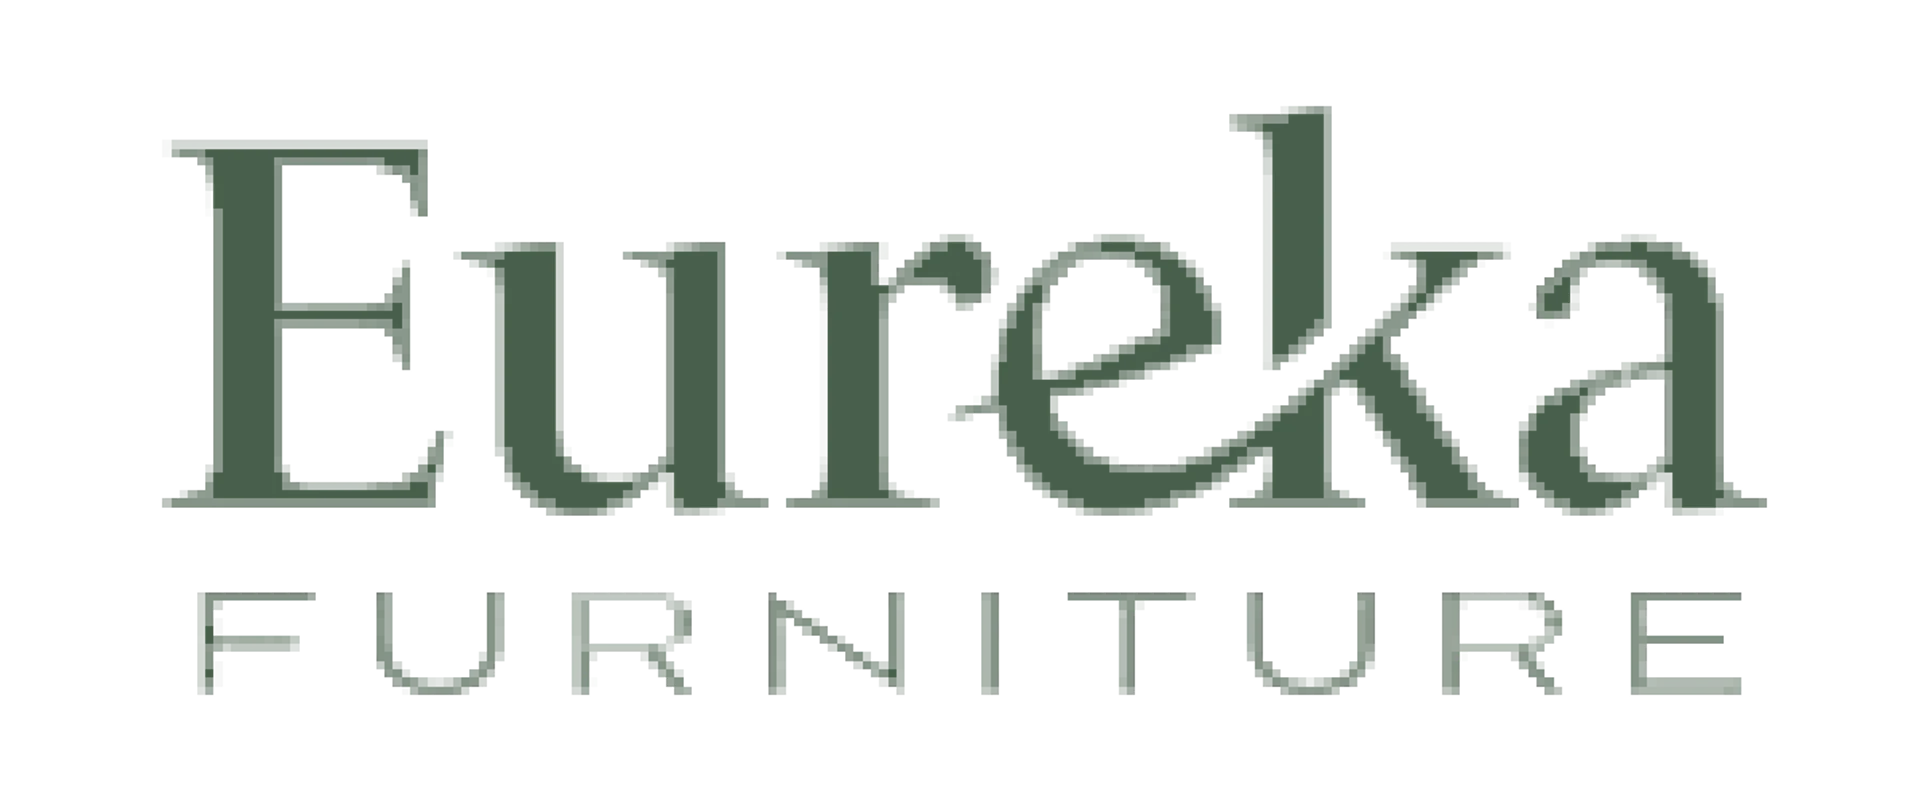 Eureka Street Furniture logo